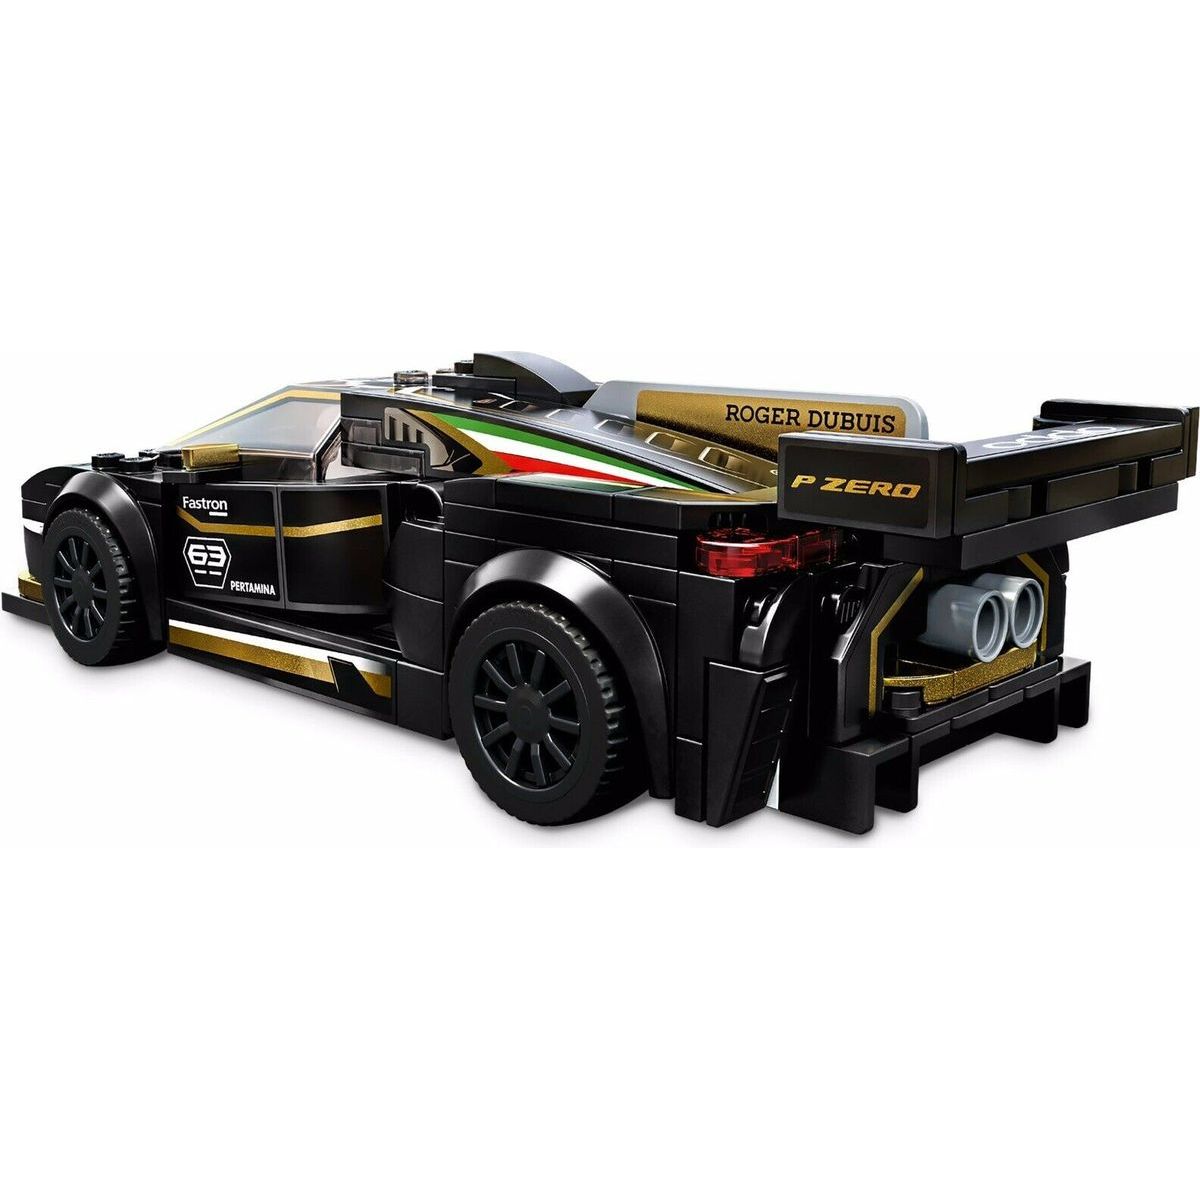 LEGO Speed Champions 76899 Lamborghini Urus ST-X ...